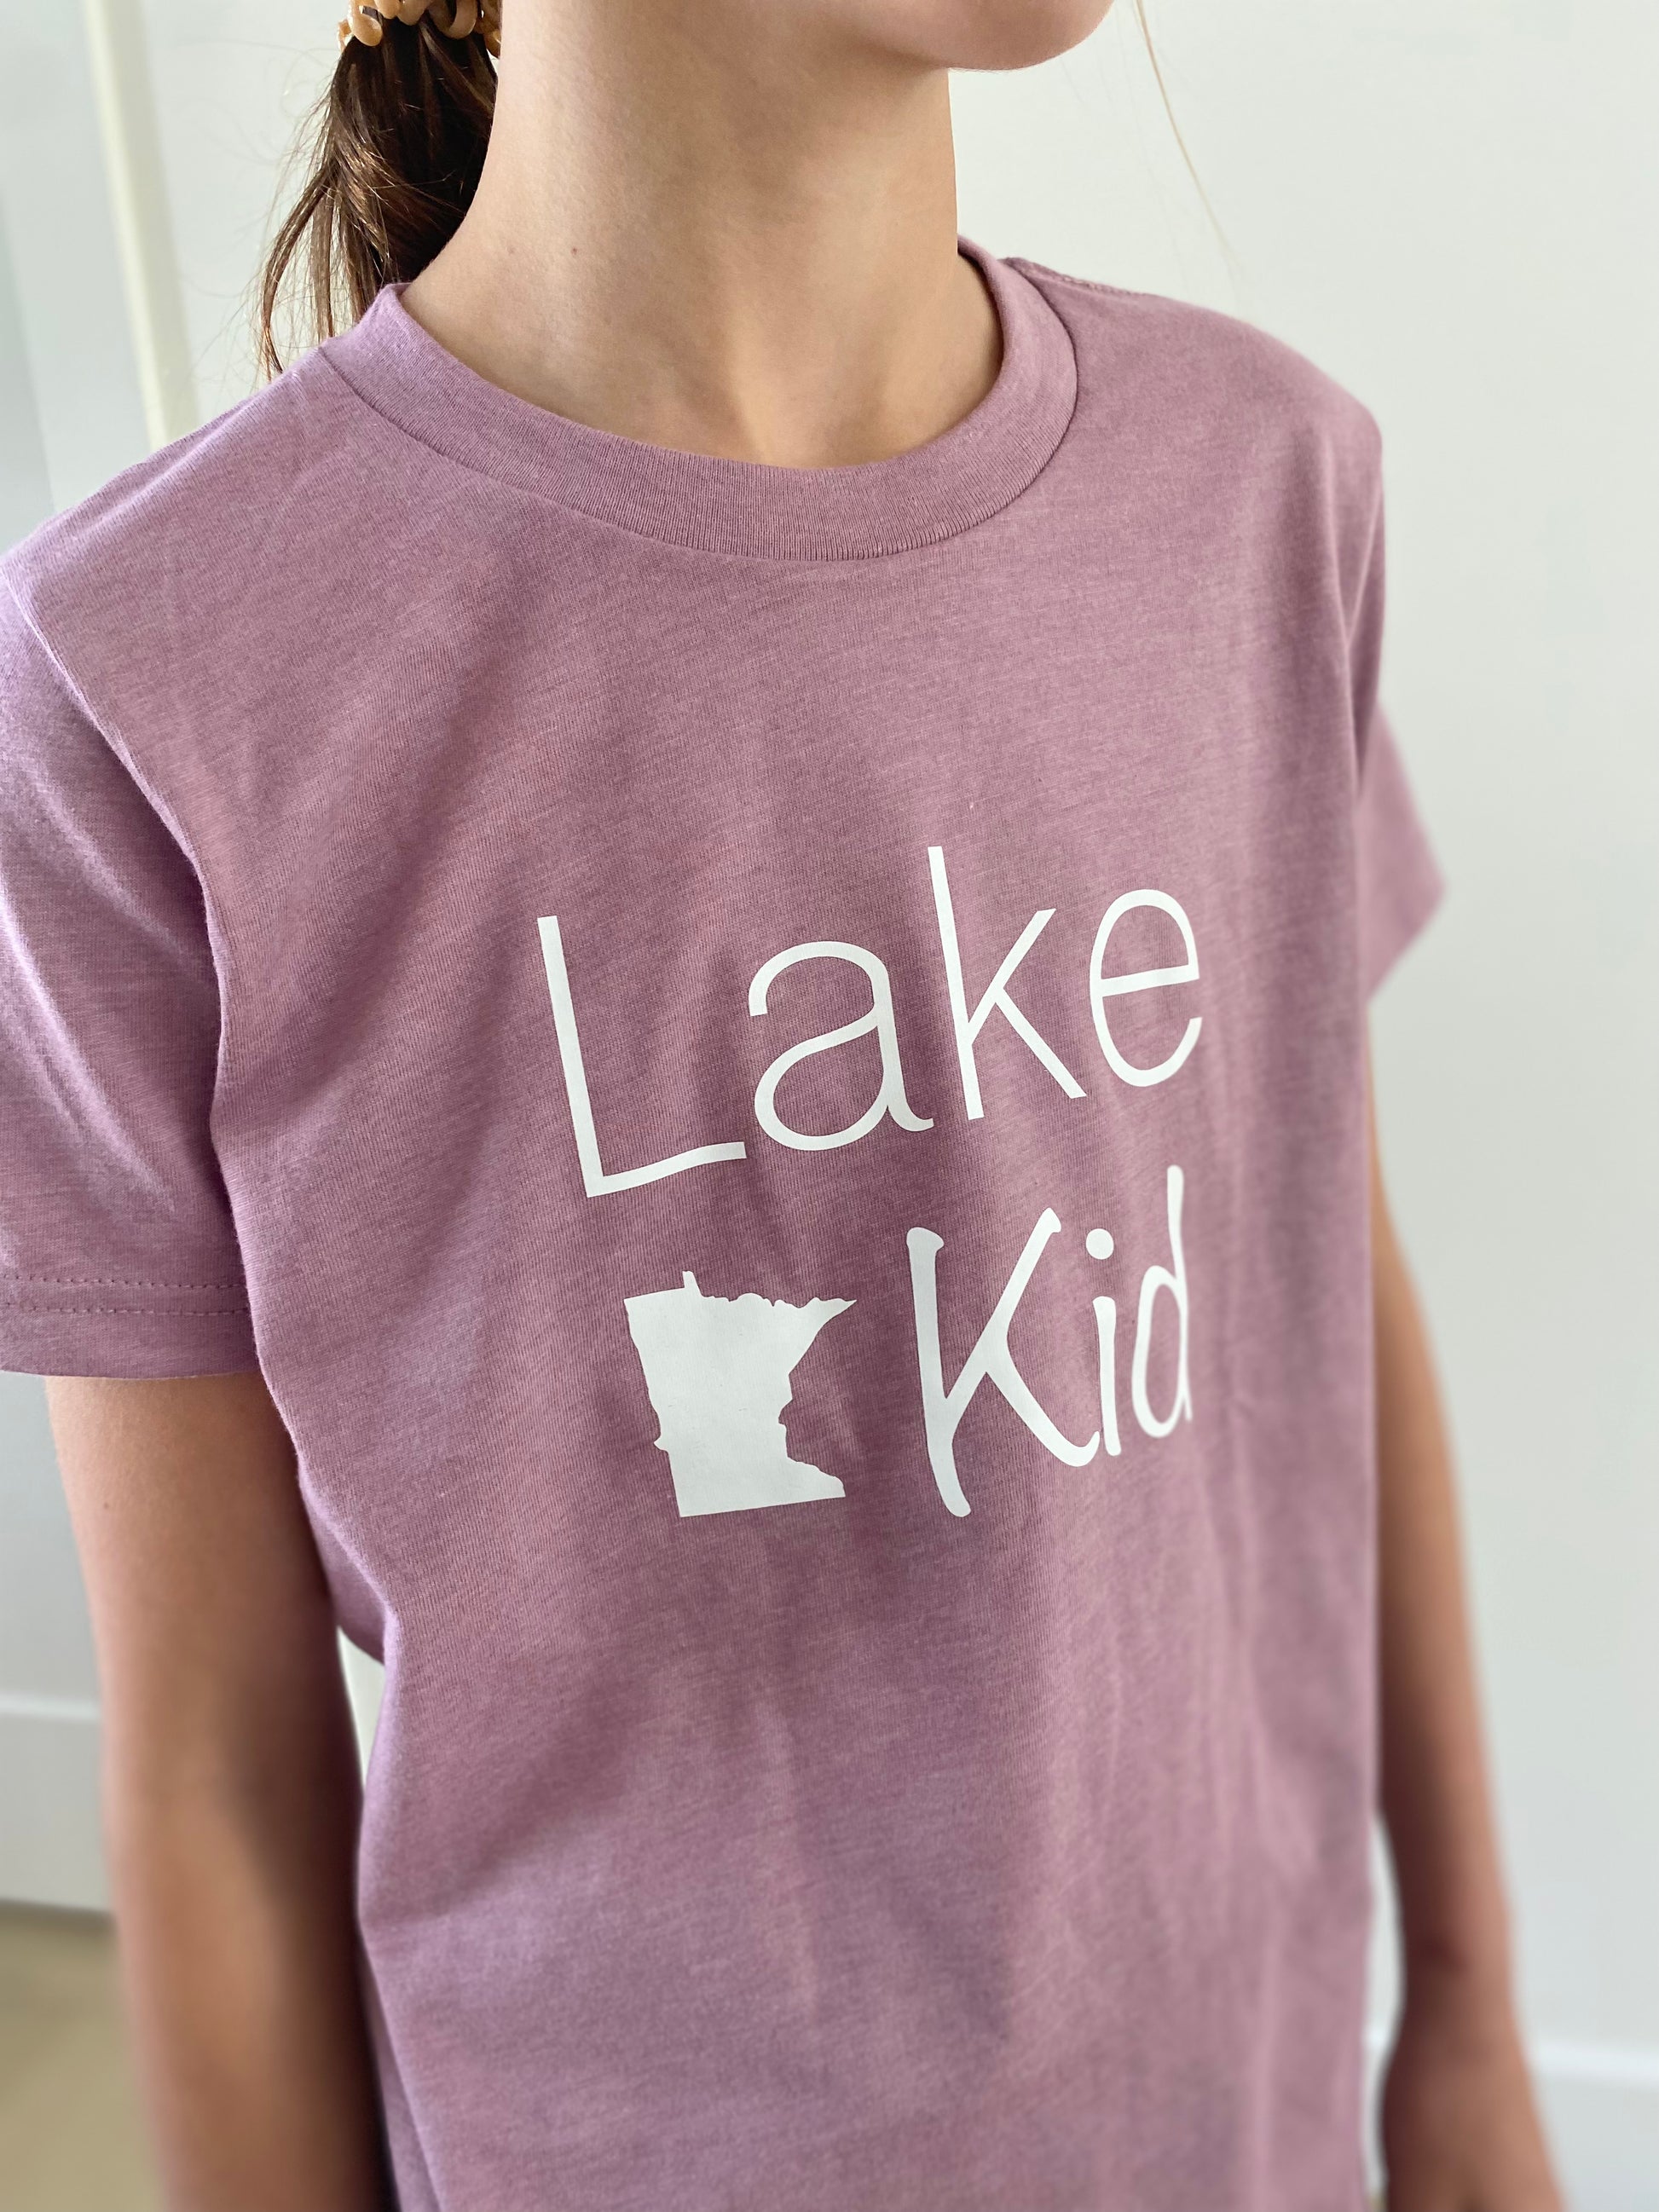 Lake Kid Tee - Lulie